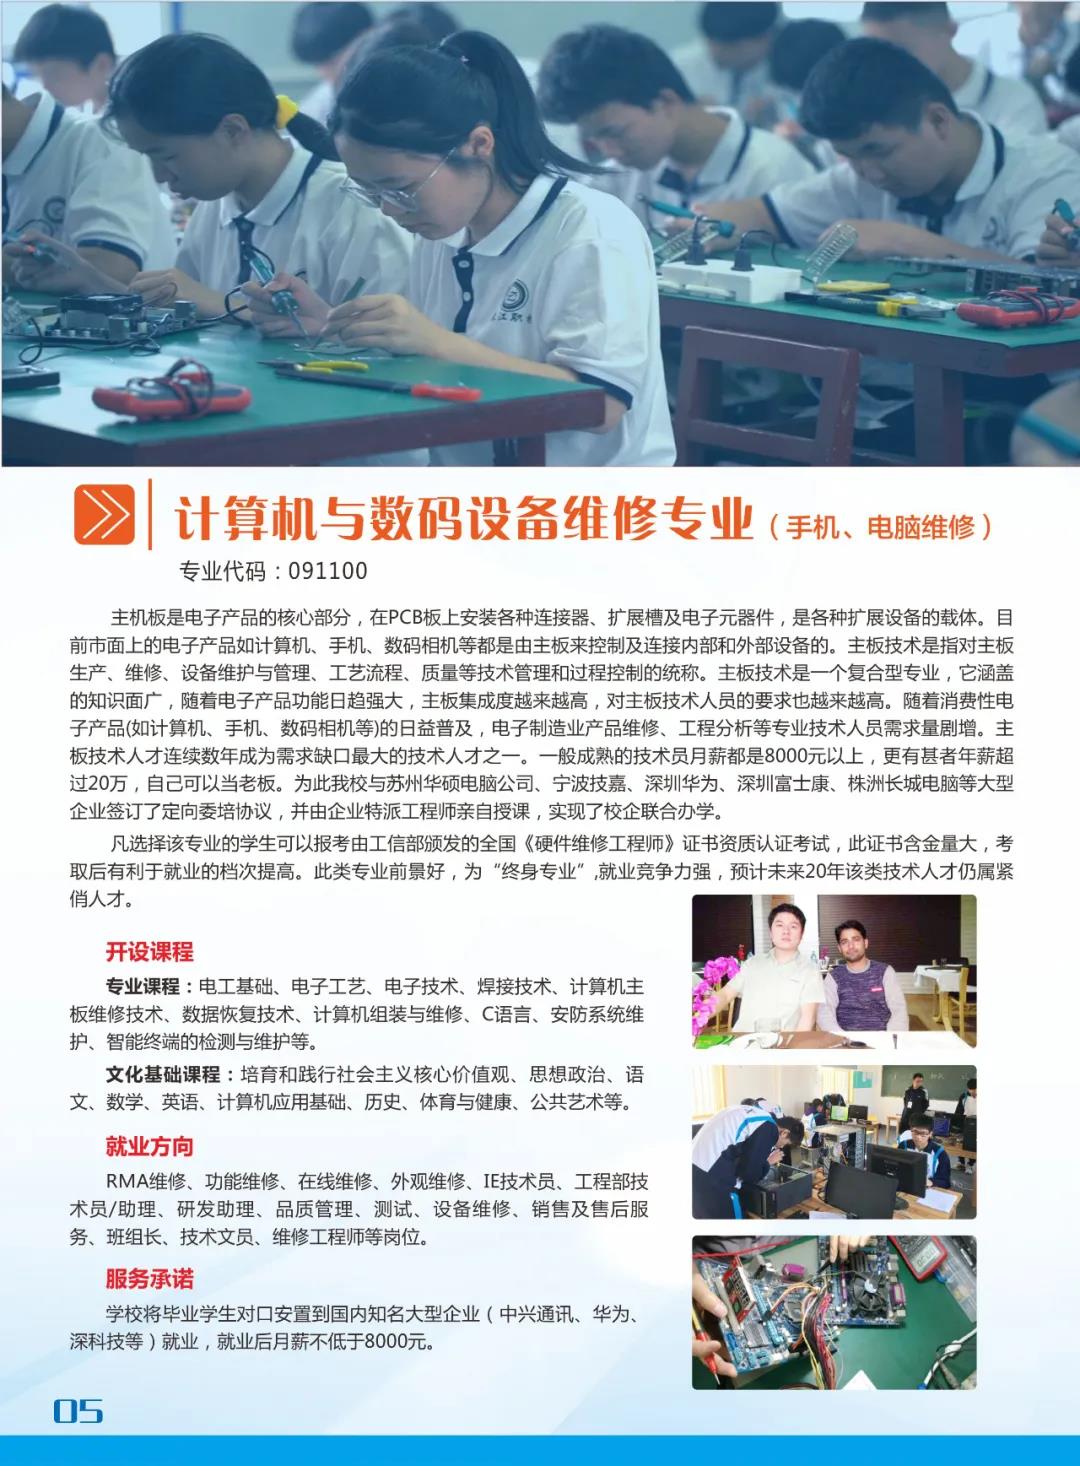 醴陵市渌江职业技术学校2021年招生简章